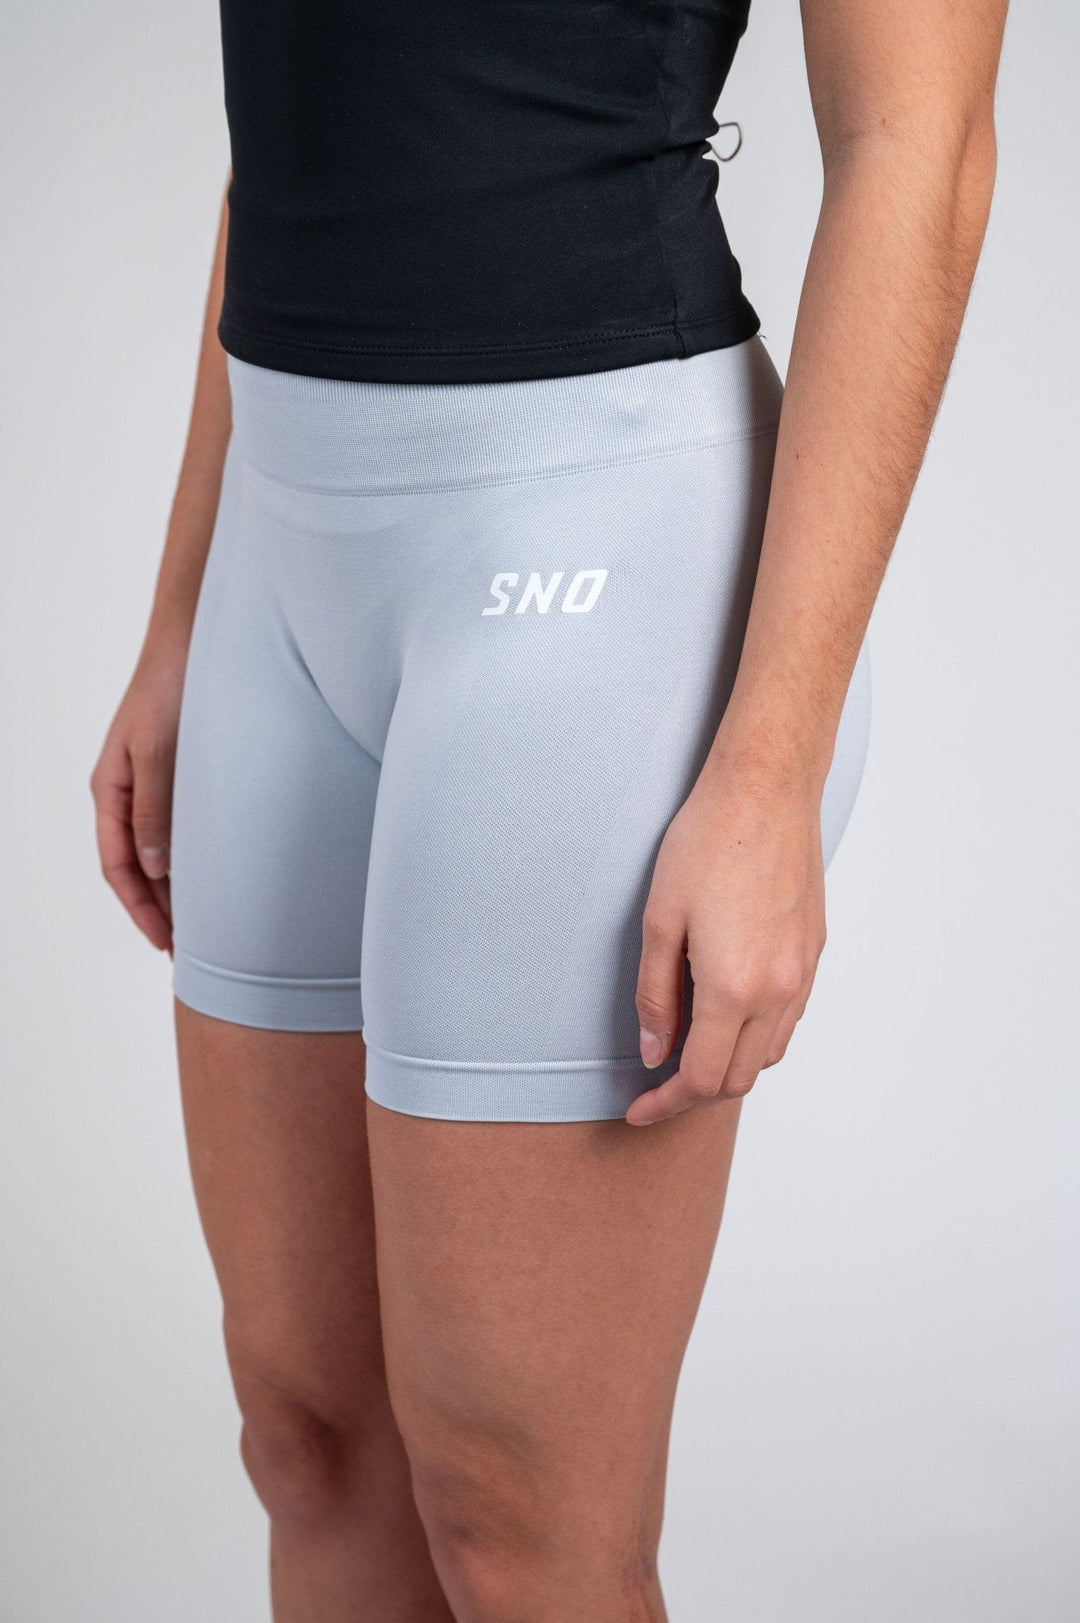 Velocity Seamless Shorts - SNO